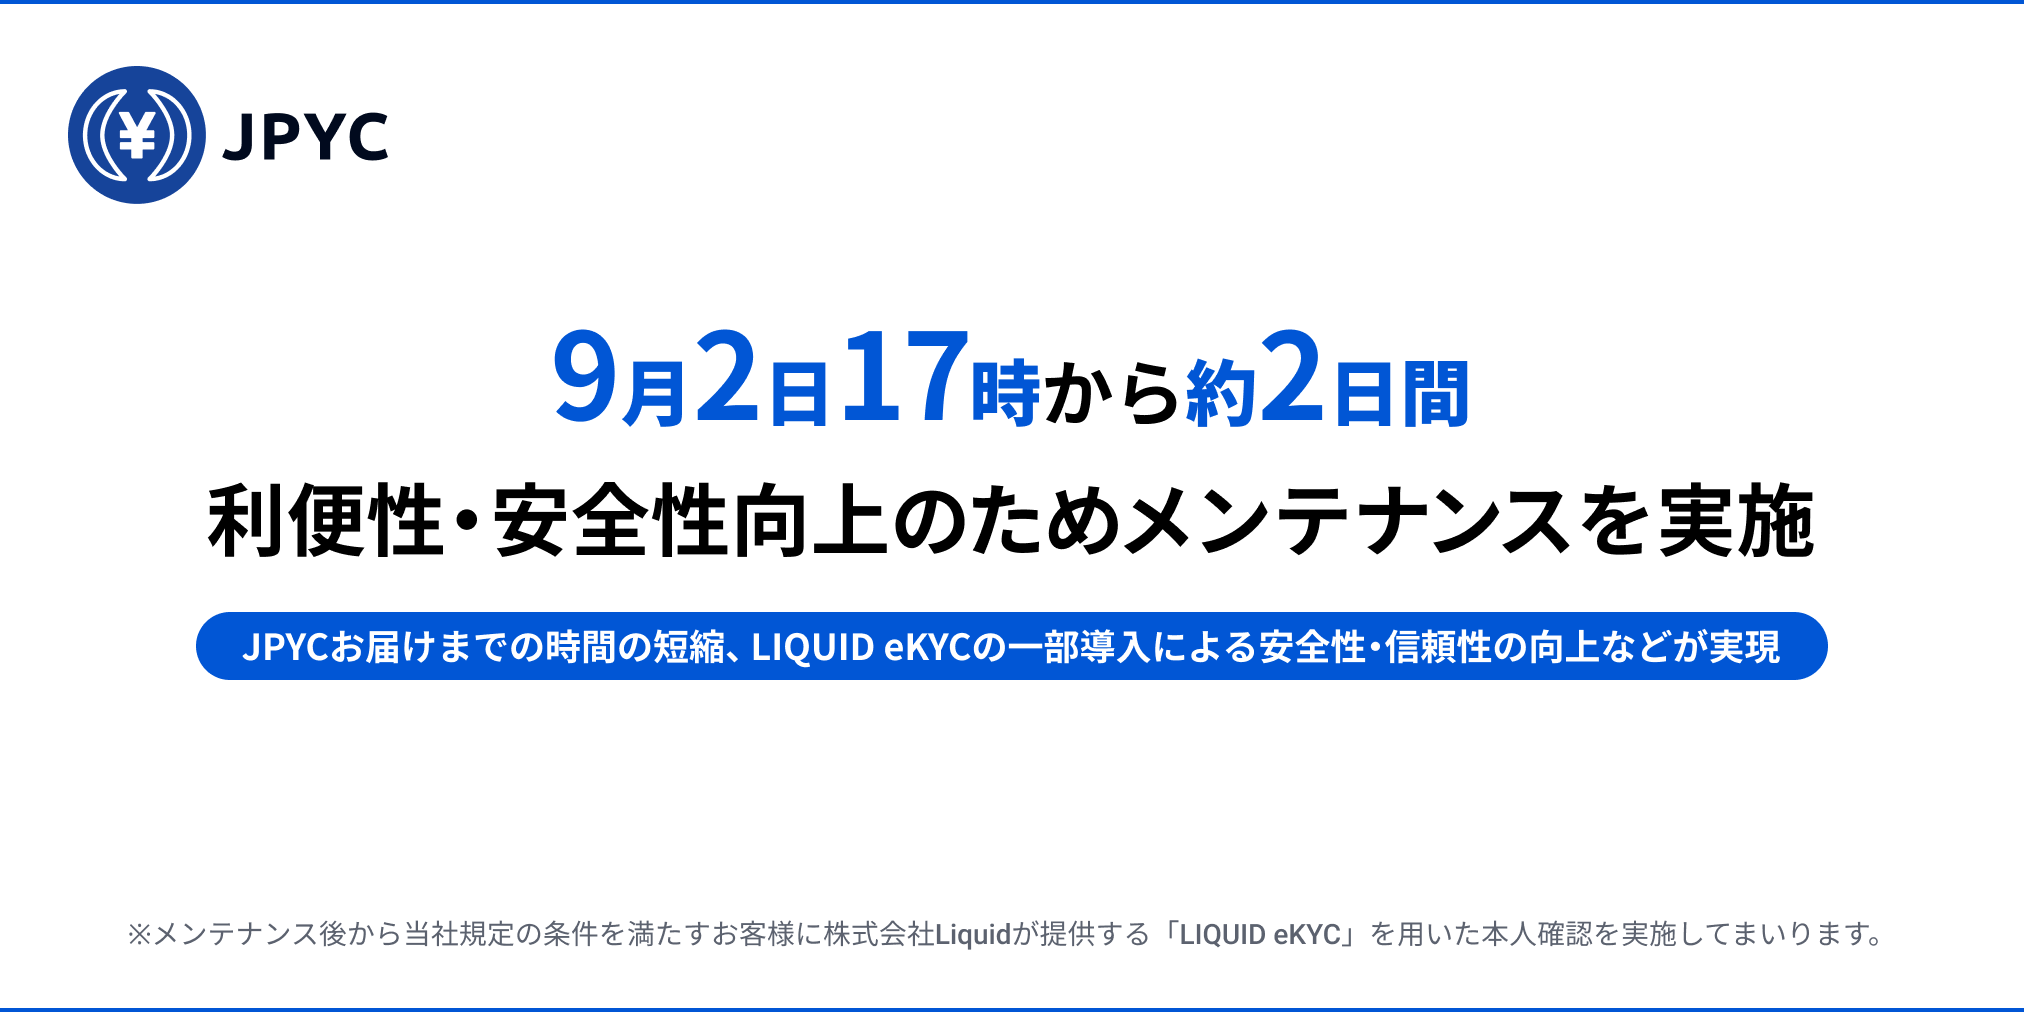 日本円ステーブルコインのjpyc 9月2日17時より約2日間メンテナンスを実施 Jpycのプレスリリース